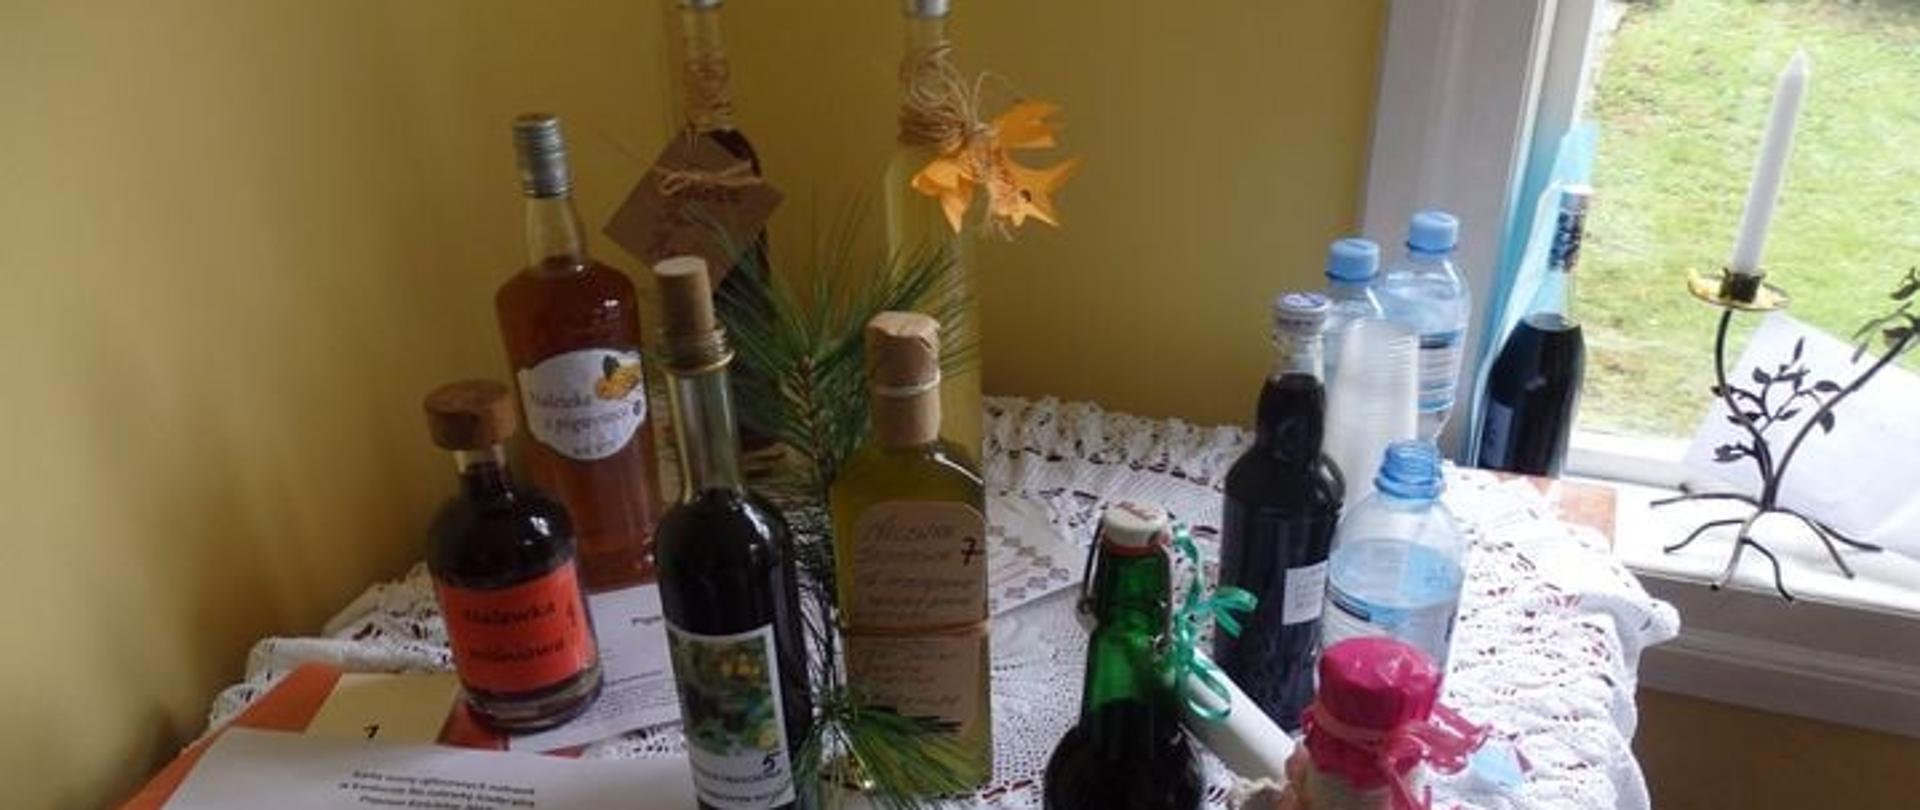 butelki z nalewkami stojącymi na stole przykrytym koronkowym obrusem